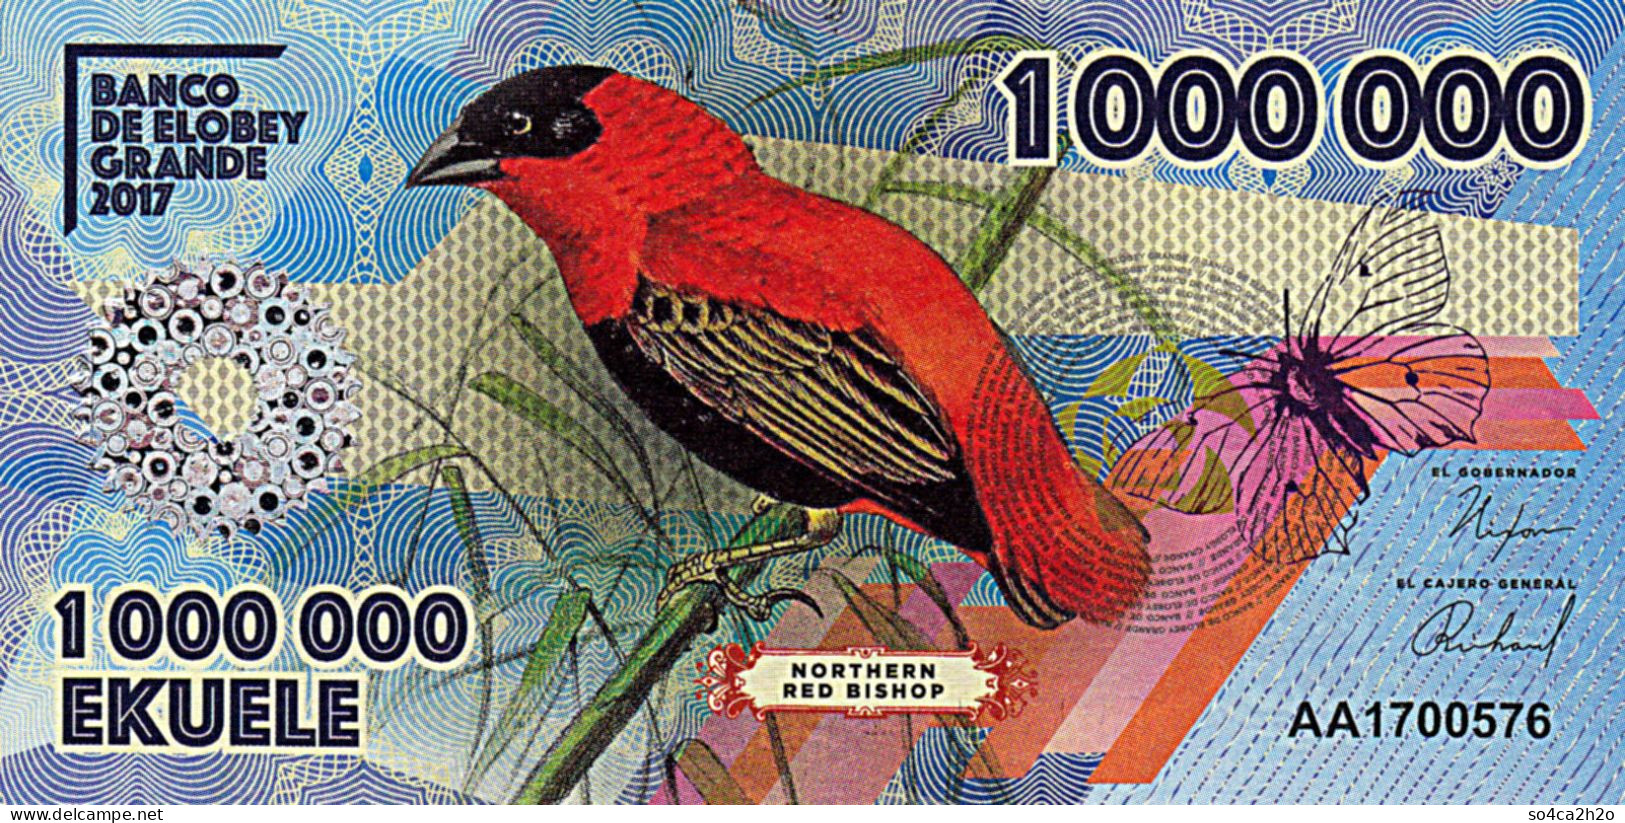 Banco De Elobey Grande 1 00 000 EKUELE 2017 L'Evêque Rouge Du Nord UNC - Guinea Ecuatorial